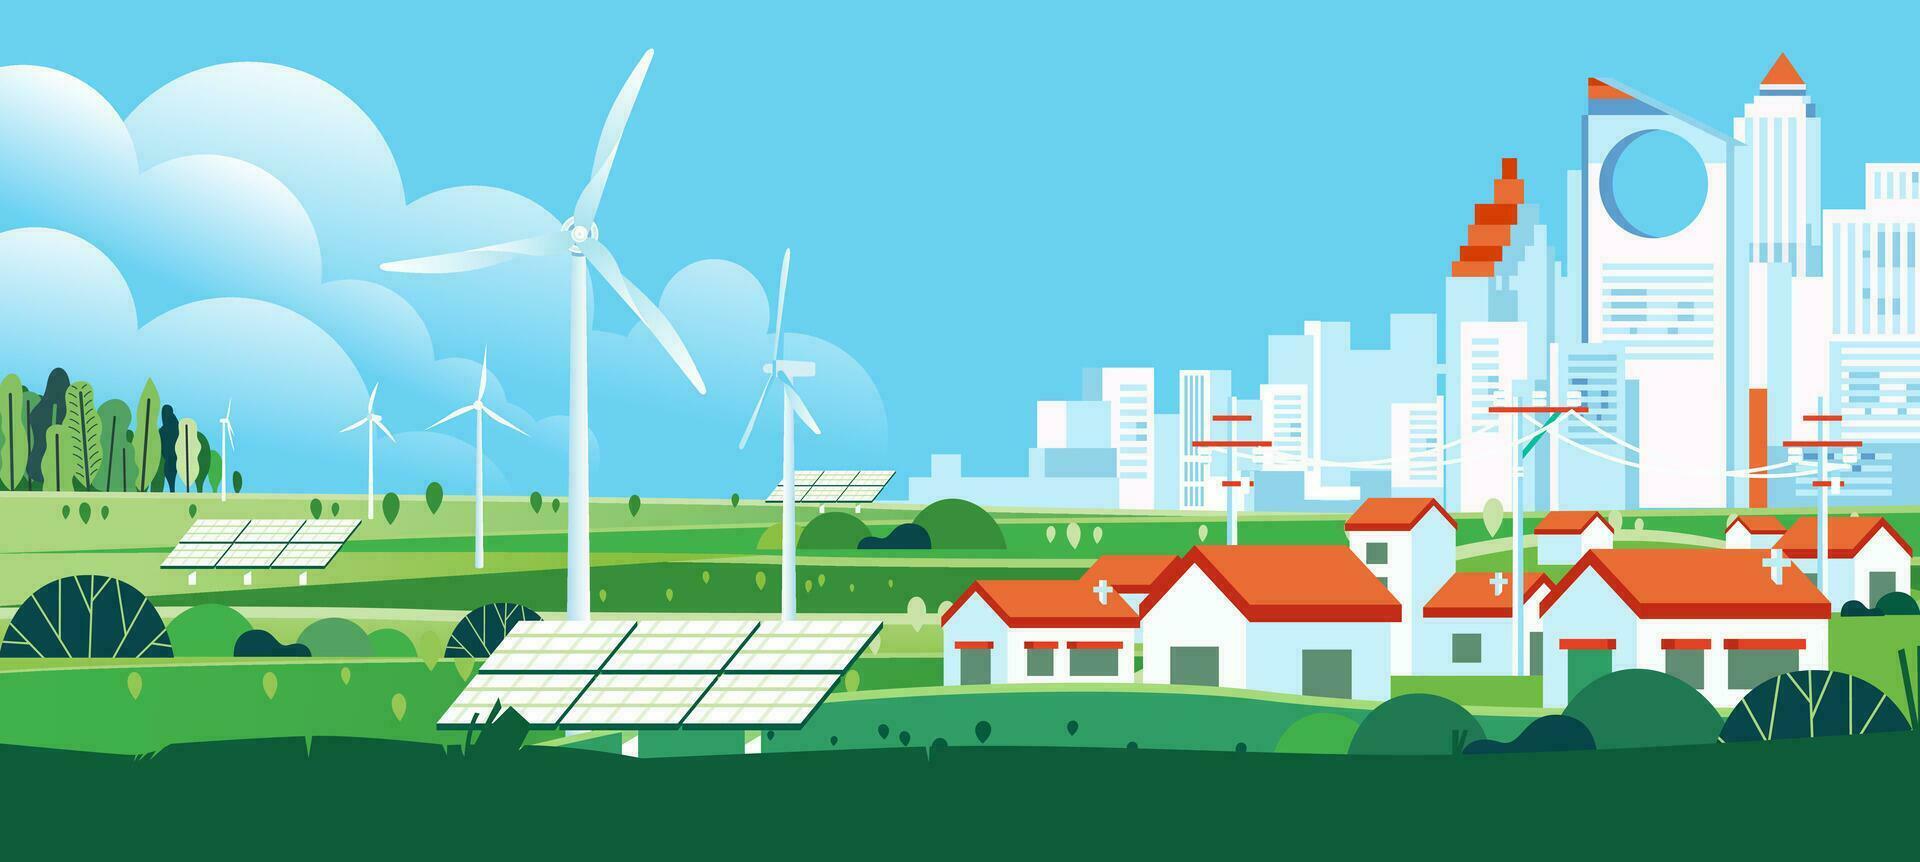 viento turbina y solar panel en verde eco ciudad antecedentes alternativa renovable alternativa energía fuente tecnología bandera vector